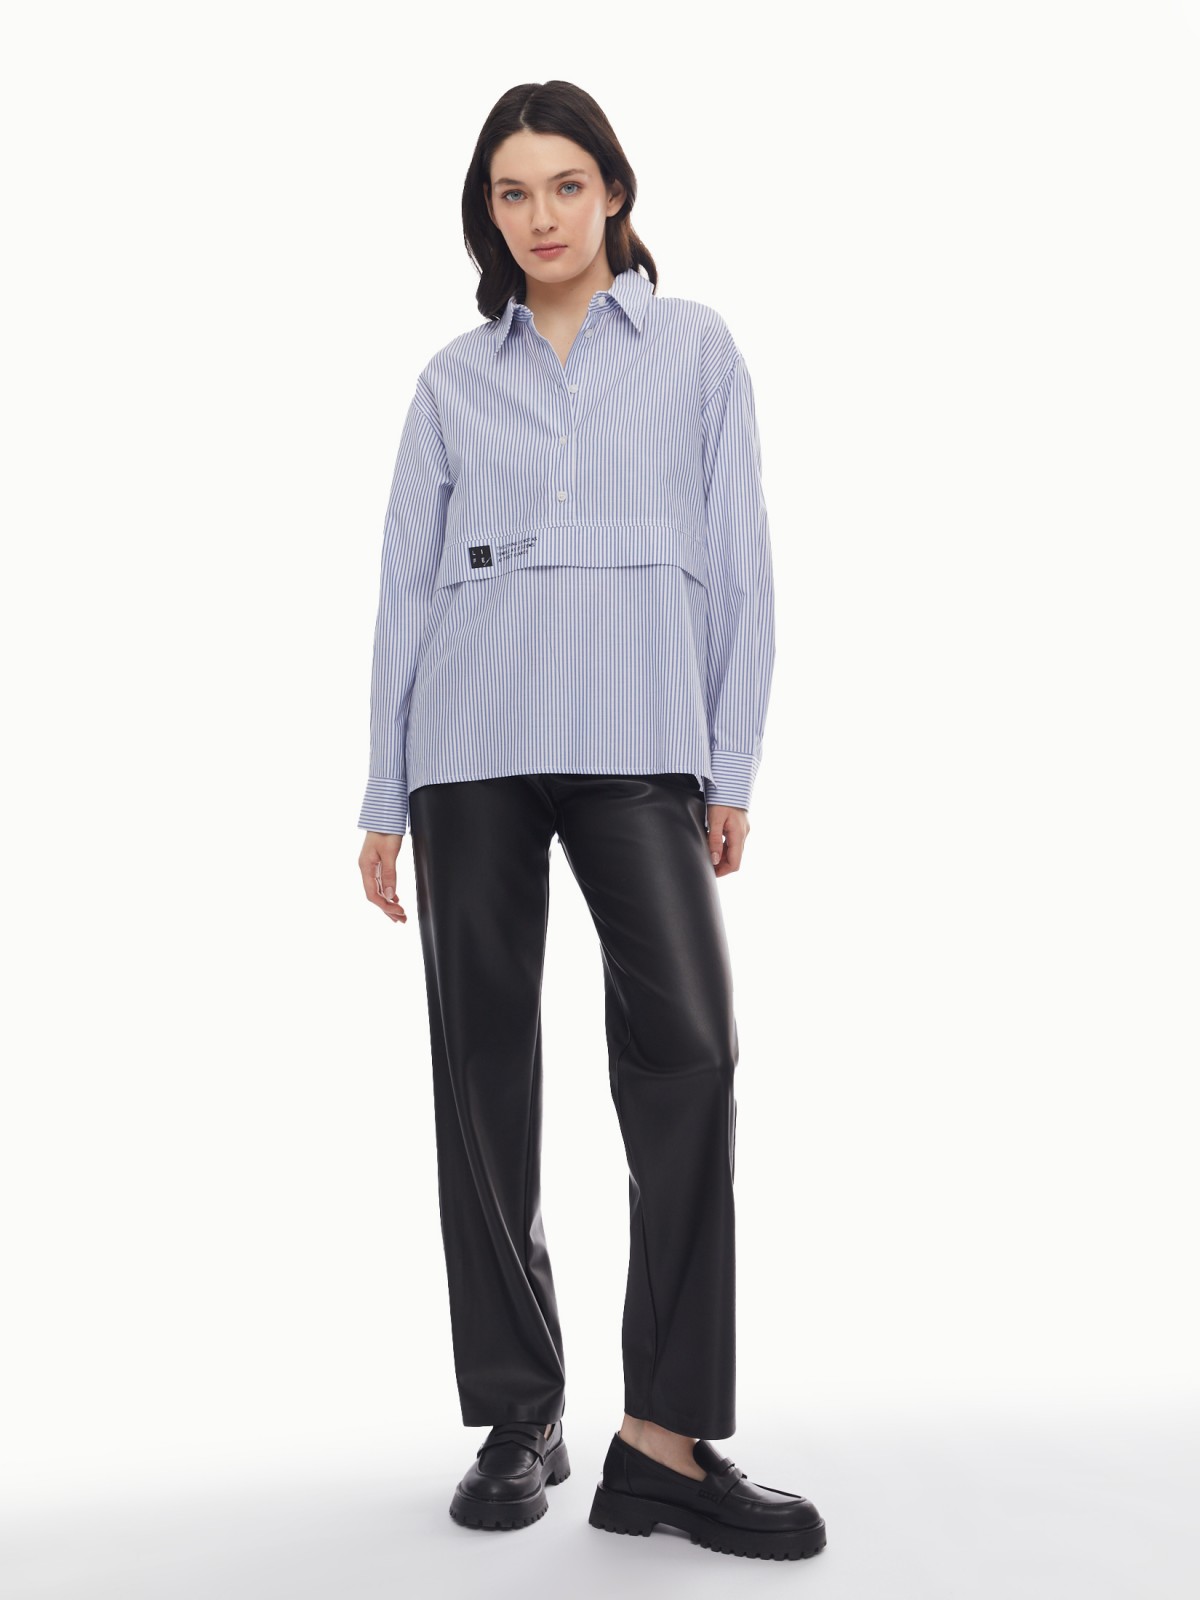 Блузка-рубашка в спортивном стиле с узором в полоску zolla 024131159053, цвет светло-голубой, размер XS - фото 2